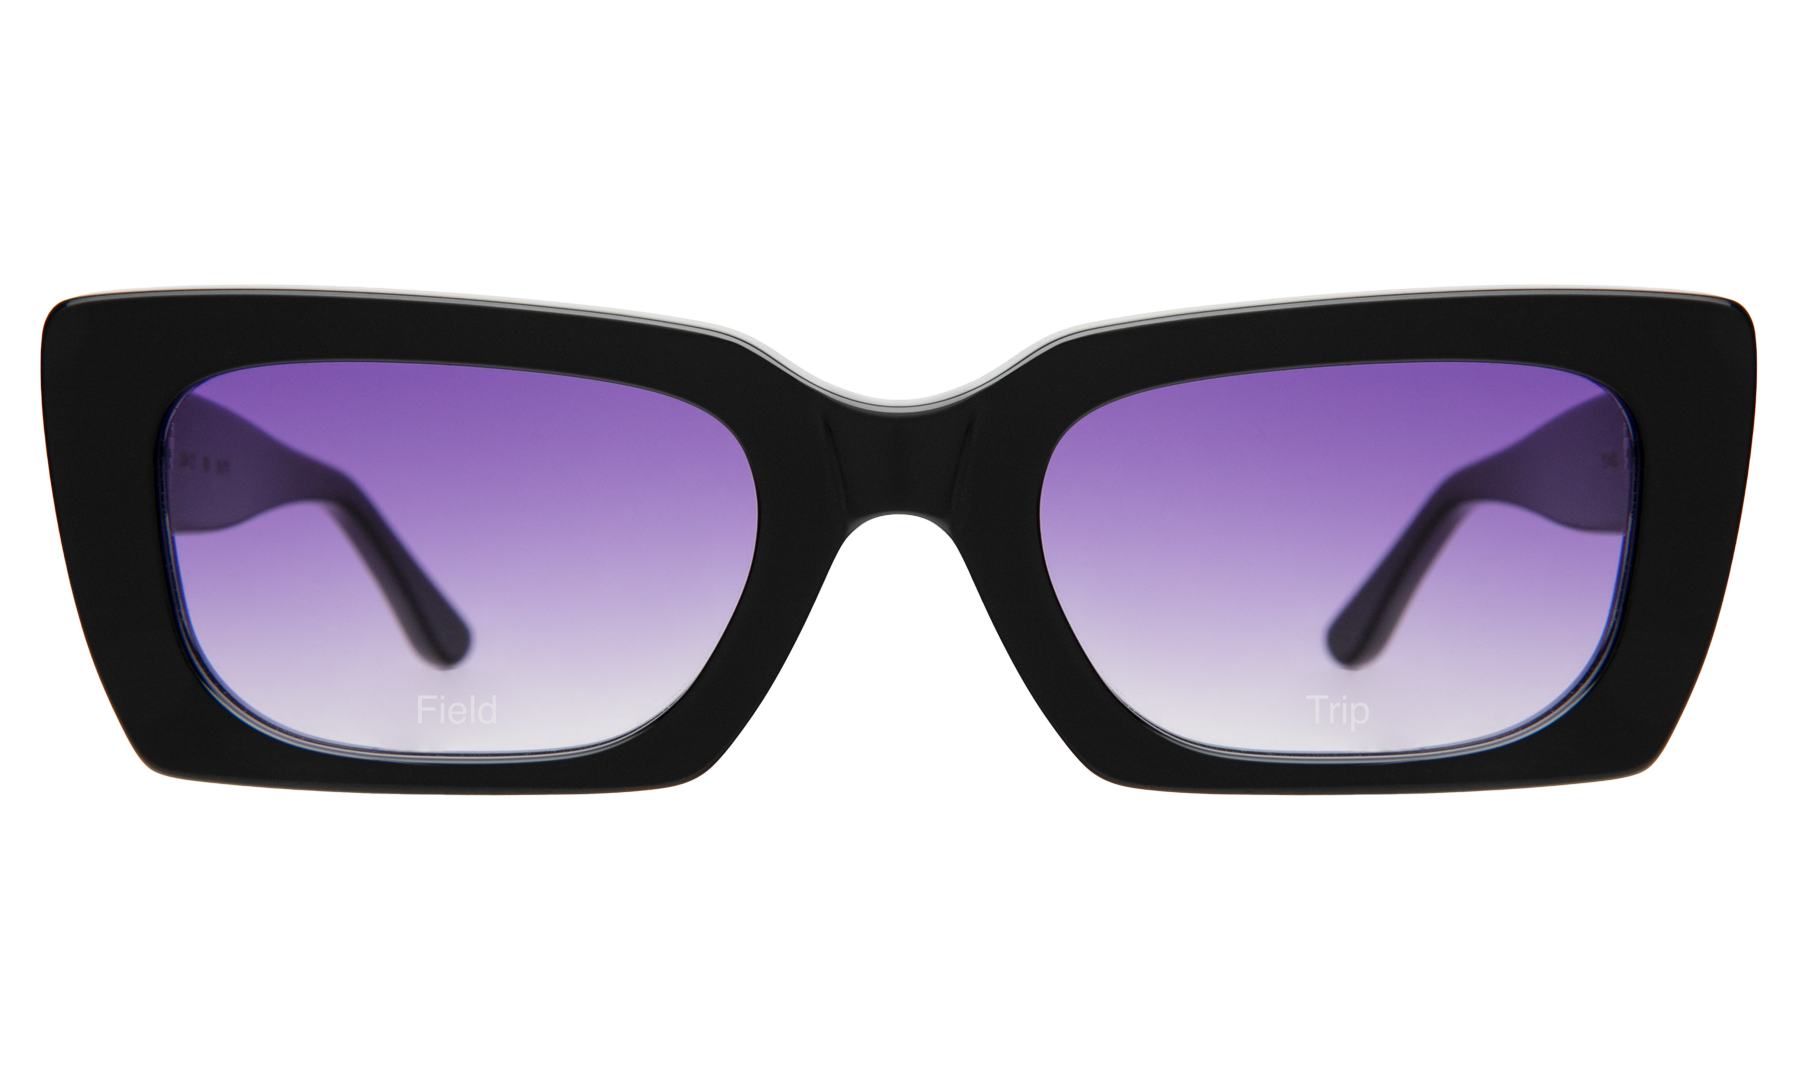 Field Trip x illesteva Sunglasses in Black/Purple Flat Gradient